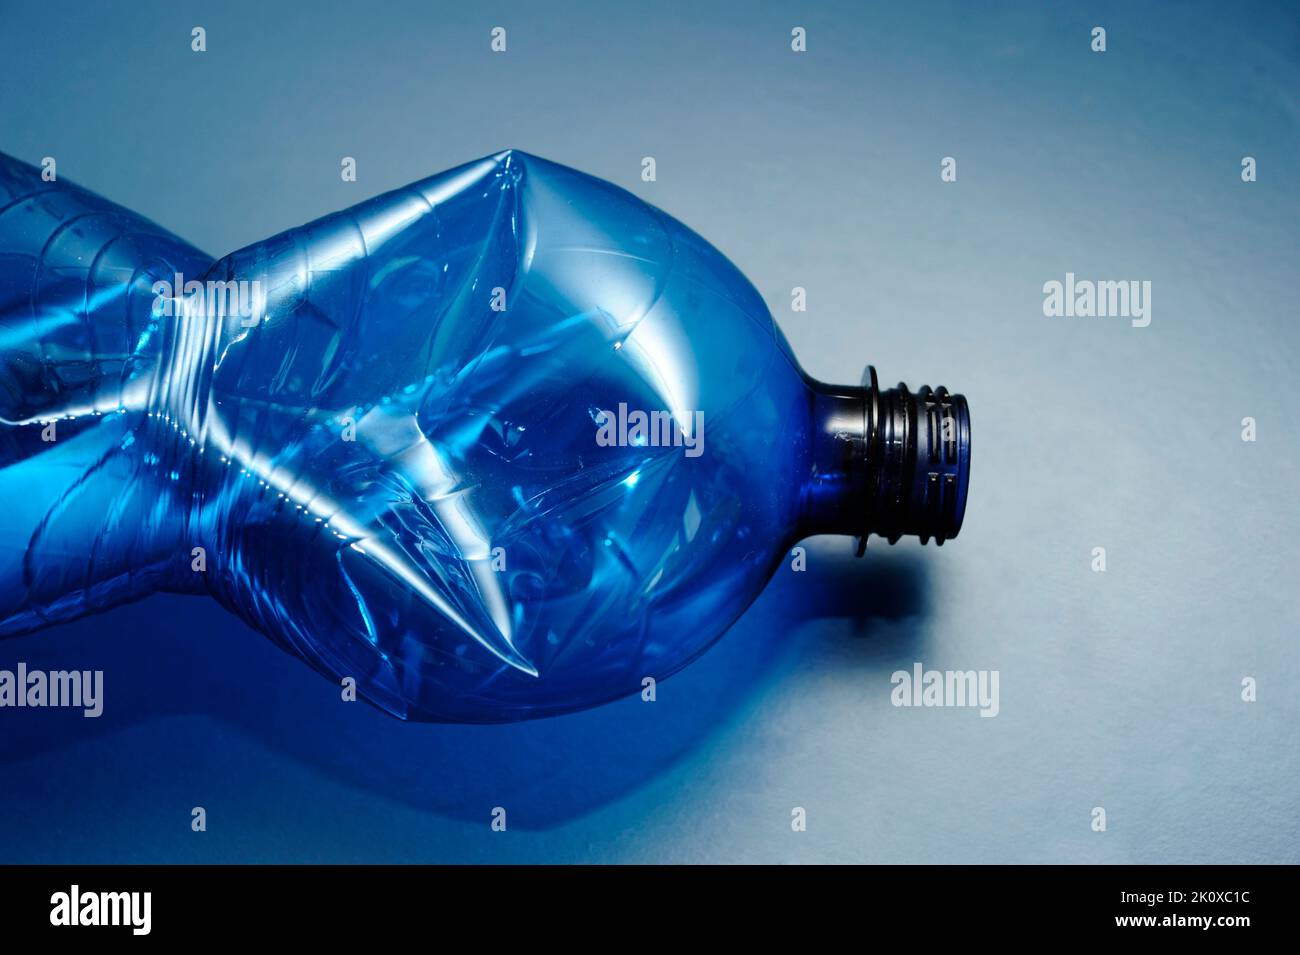 botella de plástico azul vacía, concepto de reciclaje Foto de stock